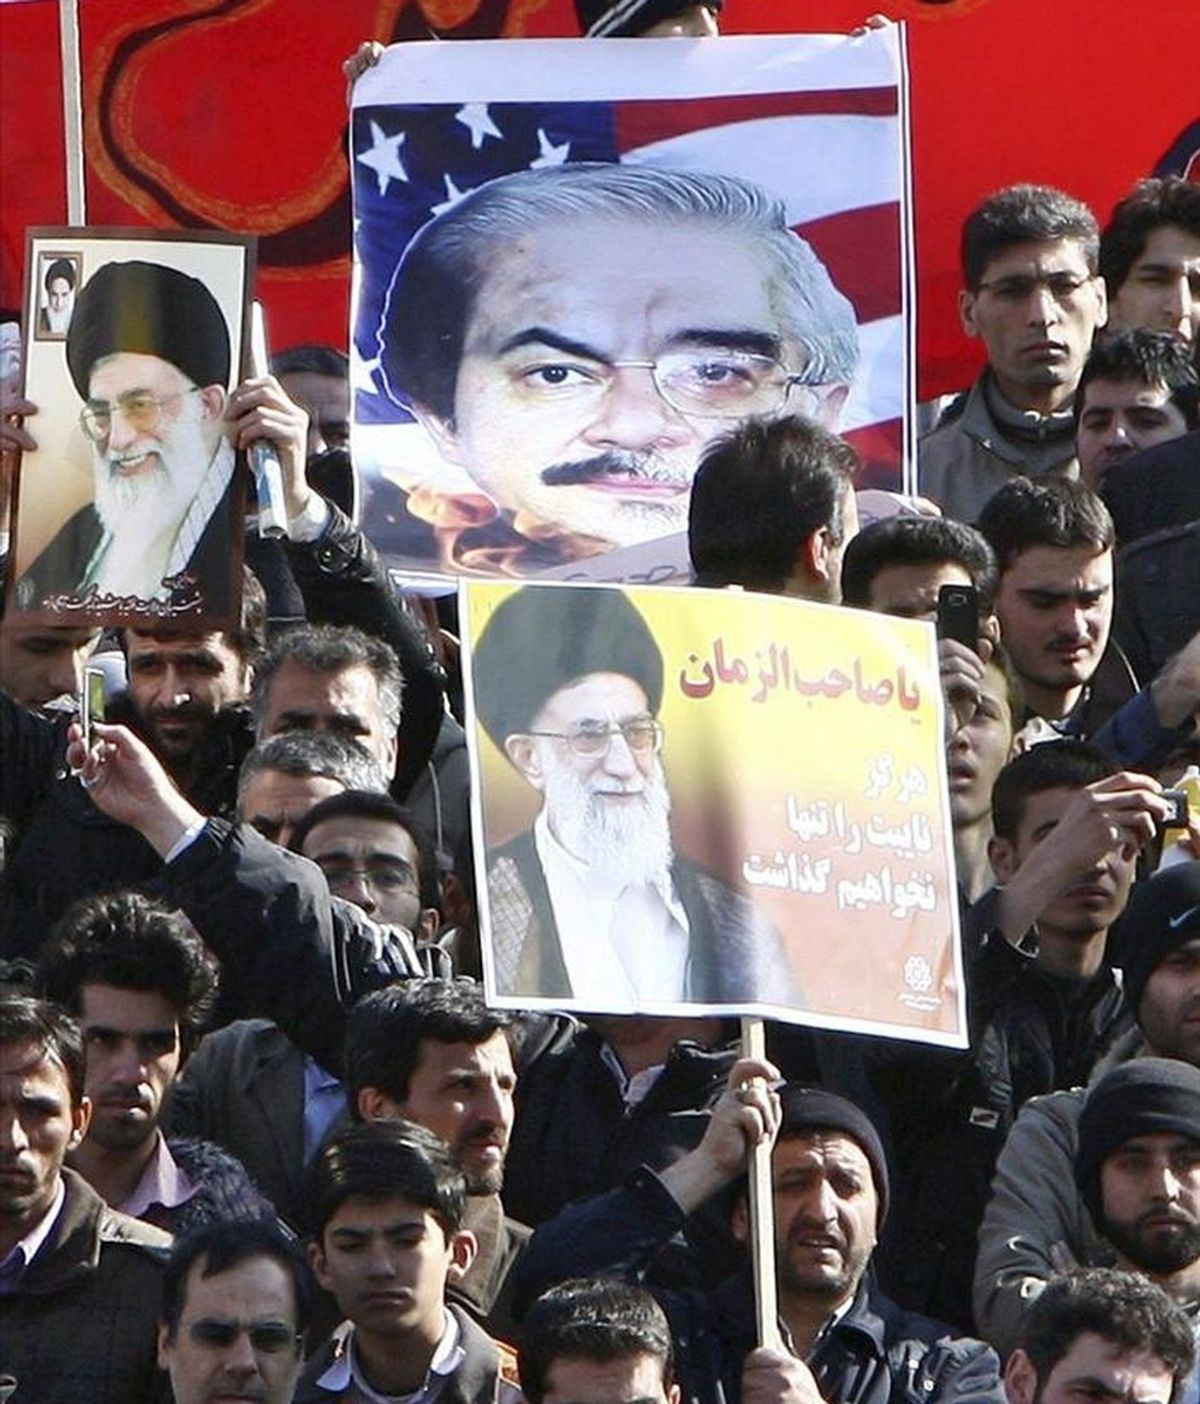 Miles de partidarios del Gobierno iraní protestan contra los líderes de la oposición, en Teherán, tras el rezo comunitario del viernes para pedir el procesamiento y la muerte de los líderes de la oposición, a los que el régimen acusa de secesionistas. EFE